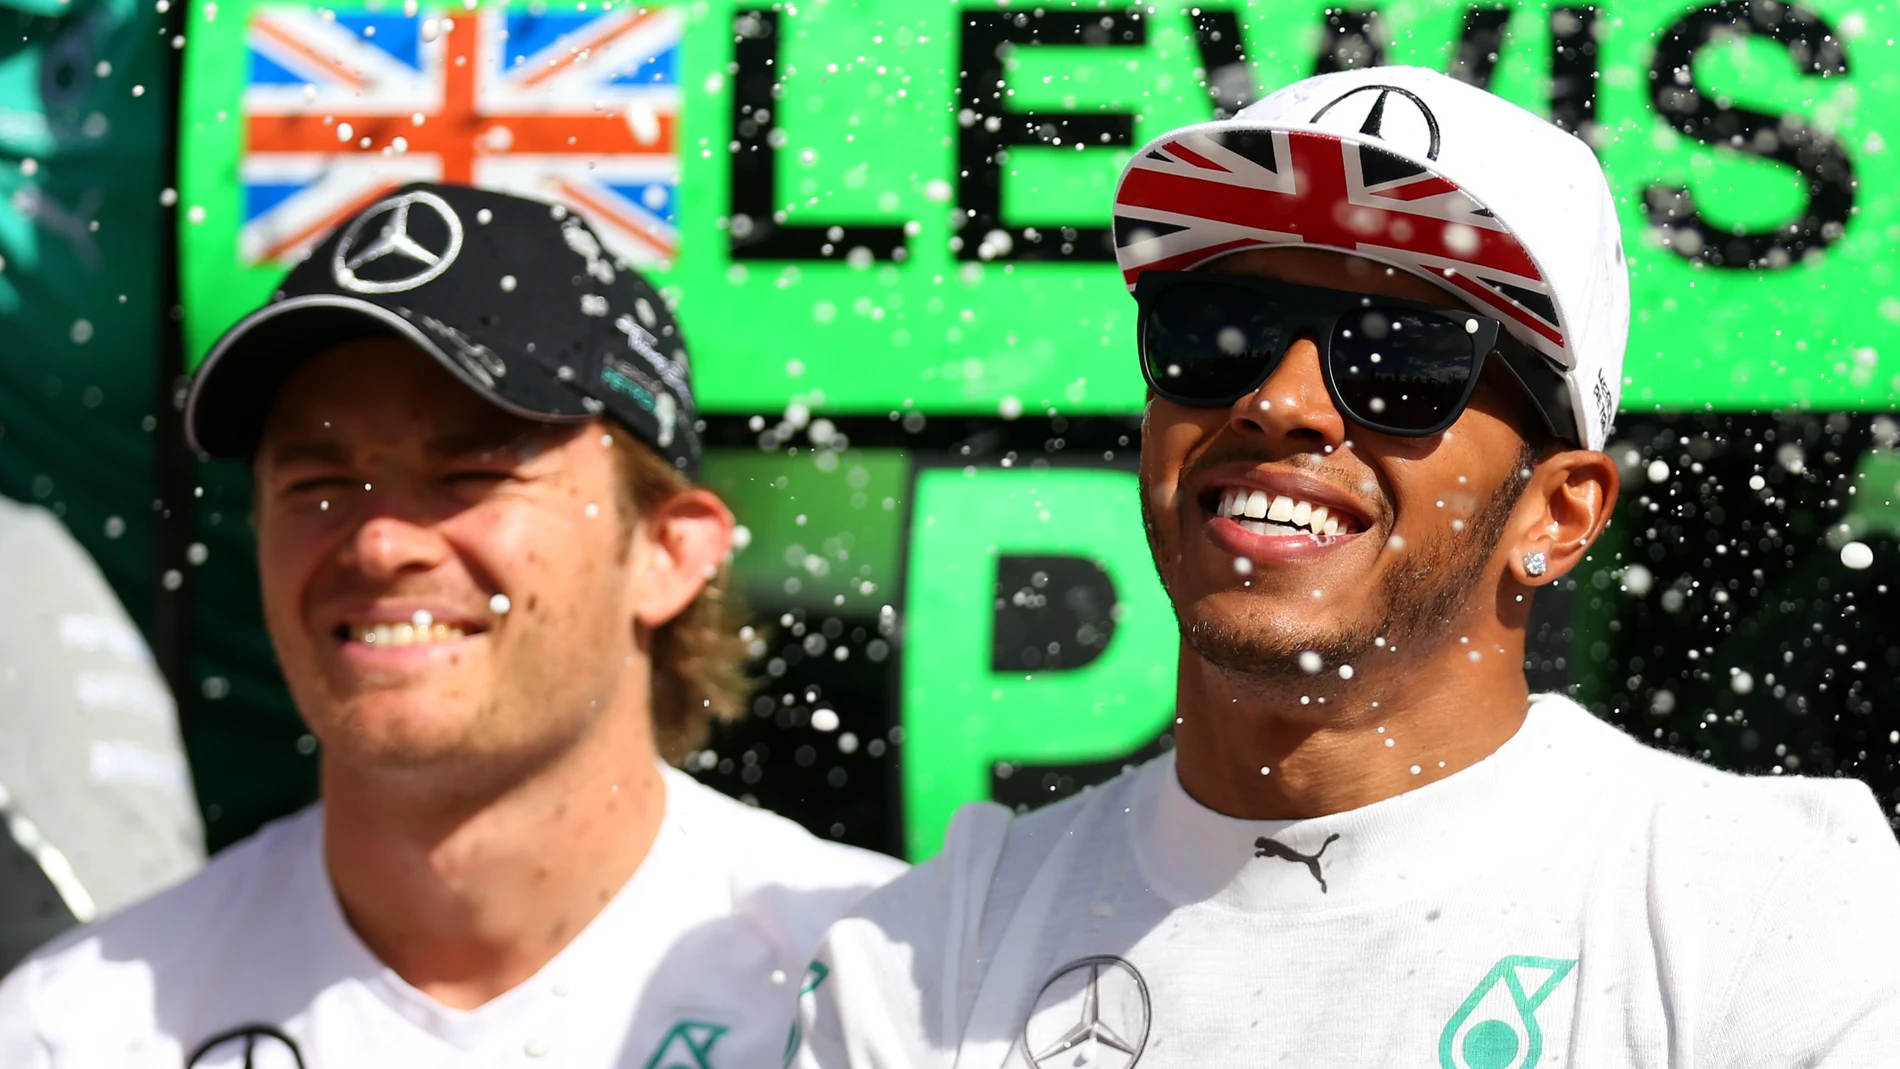 Nico Rosberg y Lewis Hamilton